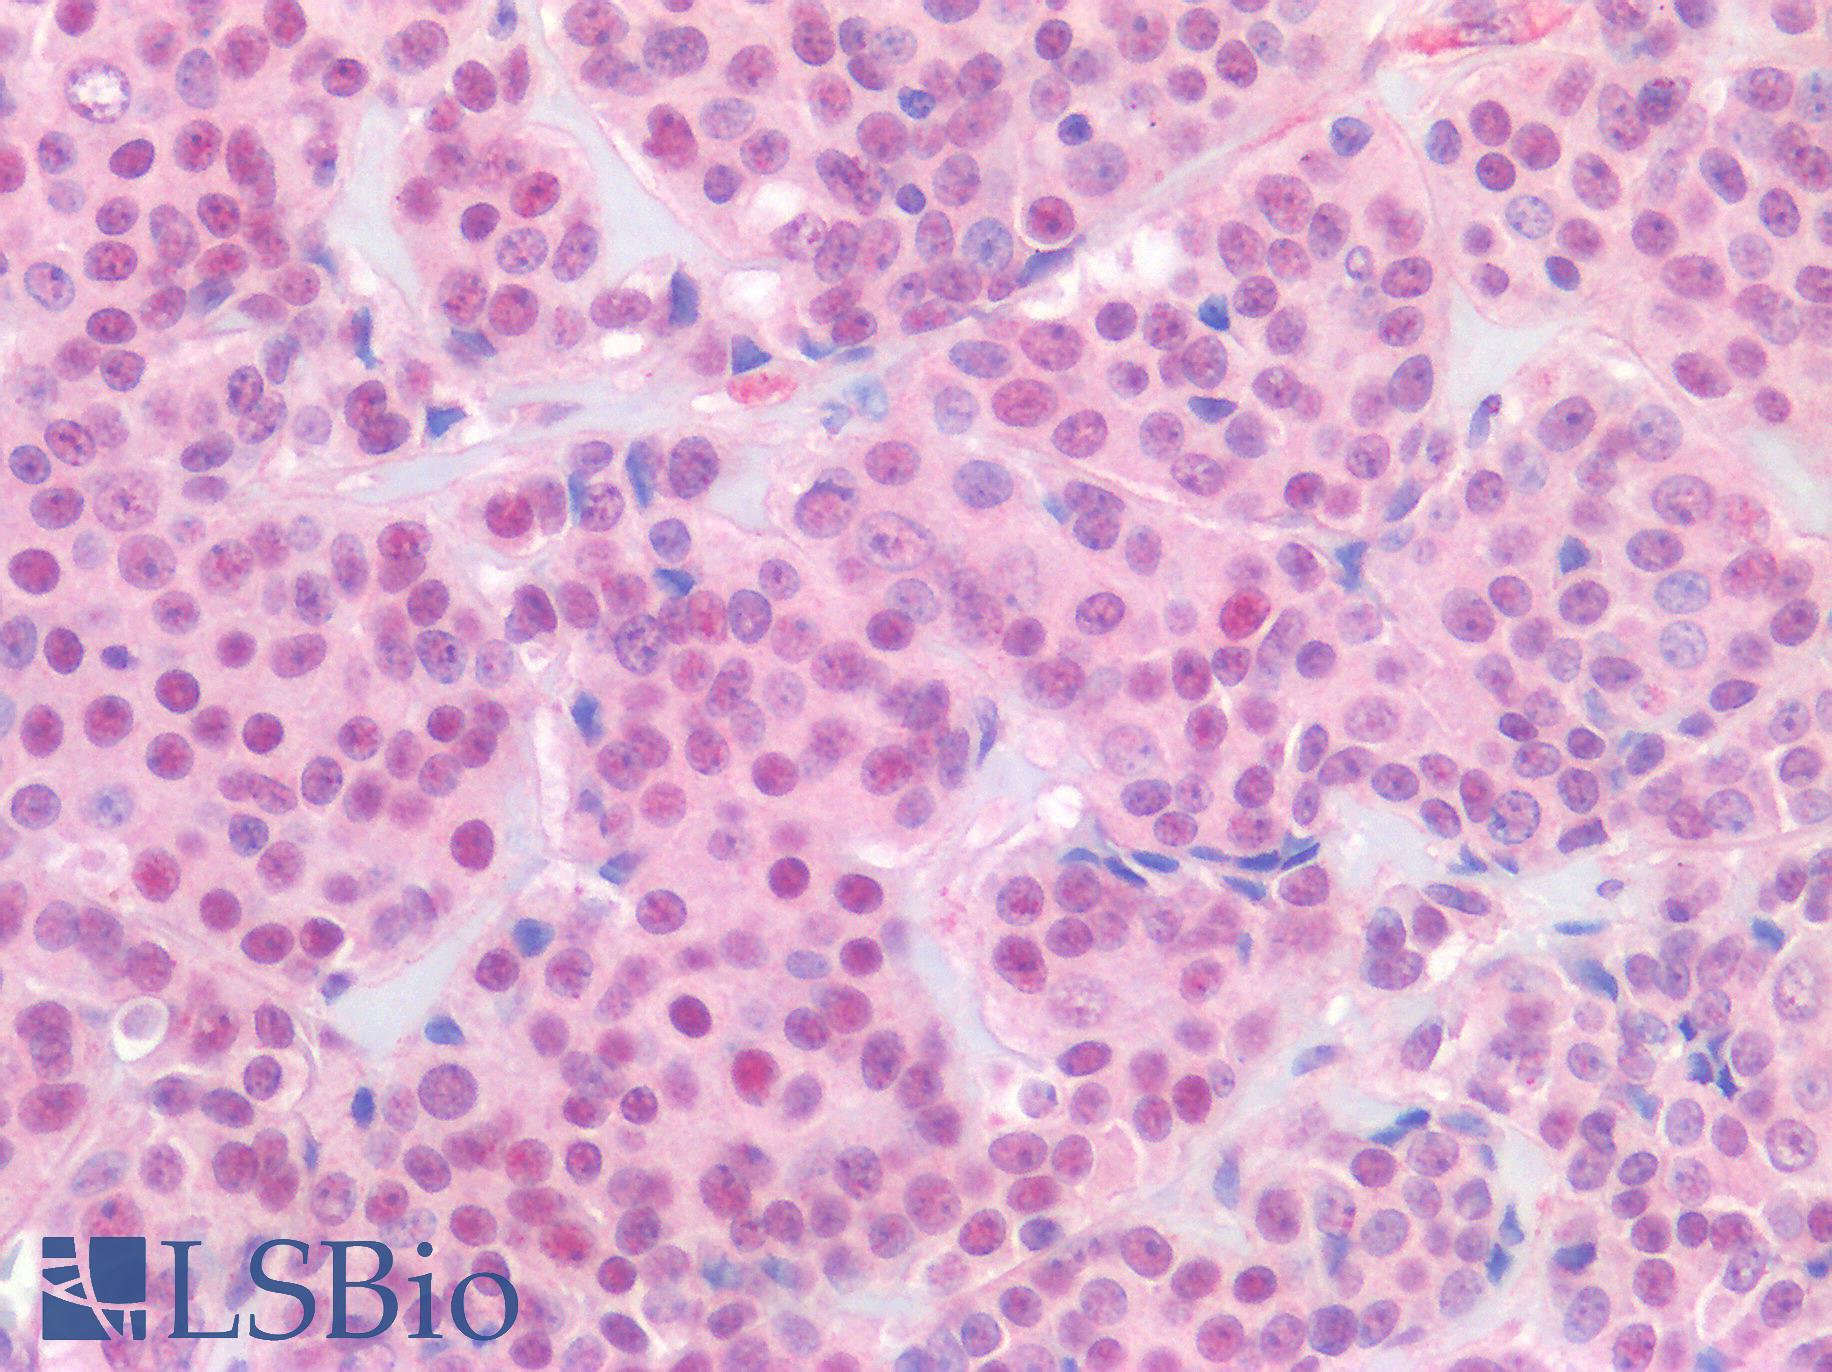 ER Alpha / Estrogen Receptor Antibody - Human Breast Carcinoma: Formalin-Fixed, Paraffin-Embedded (FFPE)